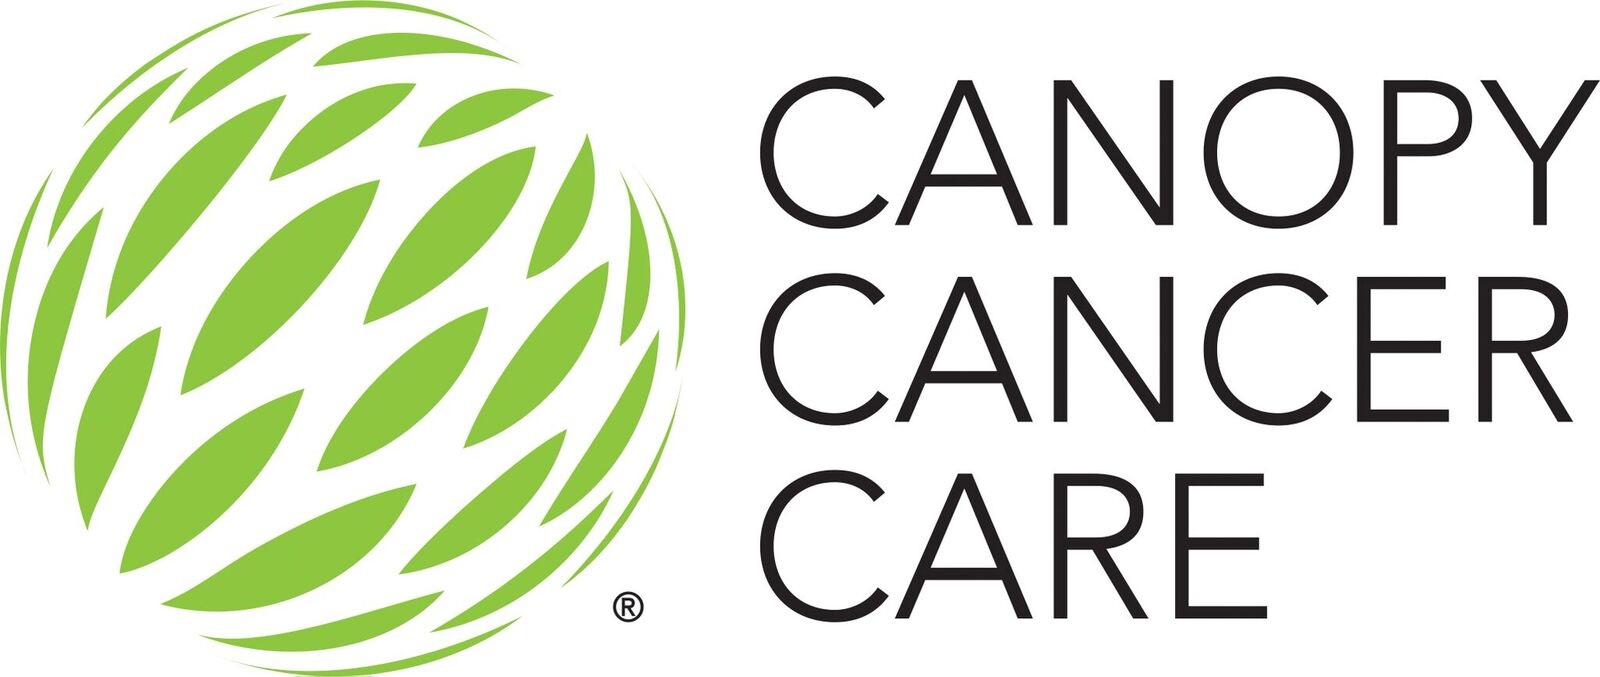 canopy company logo